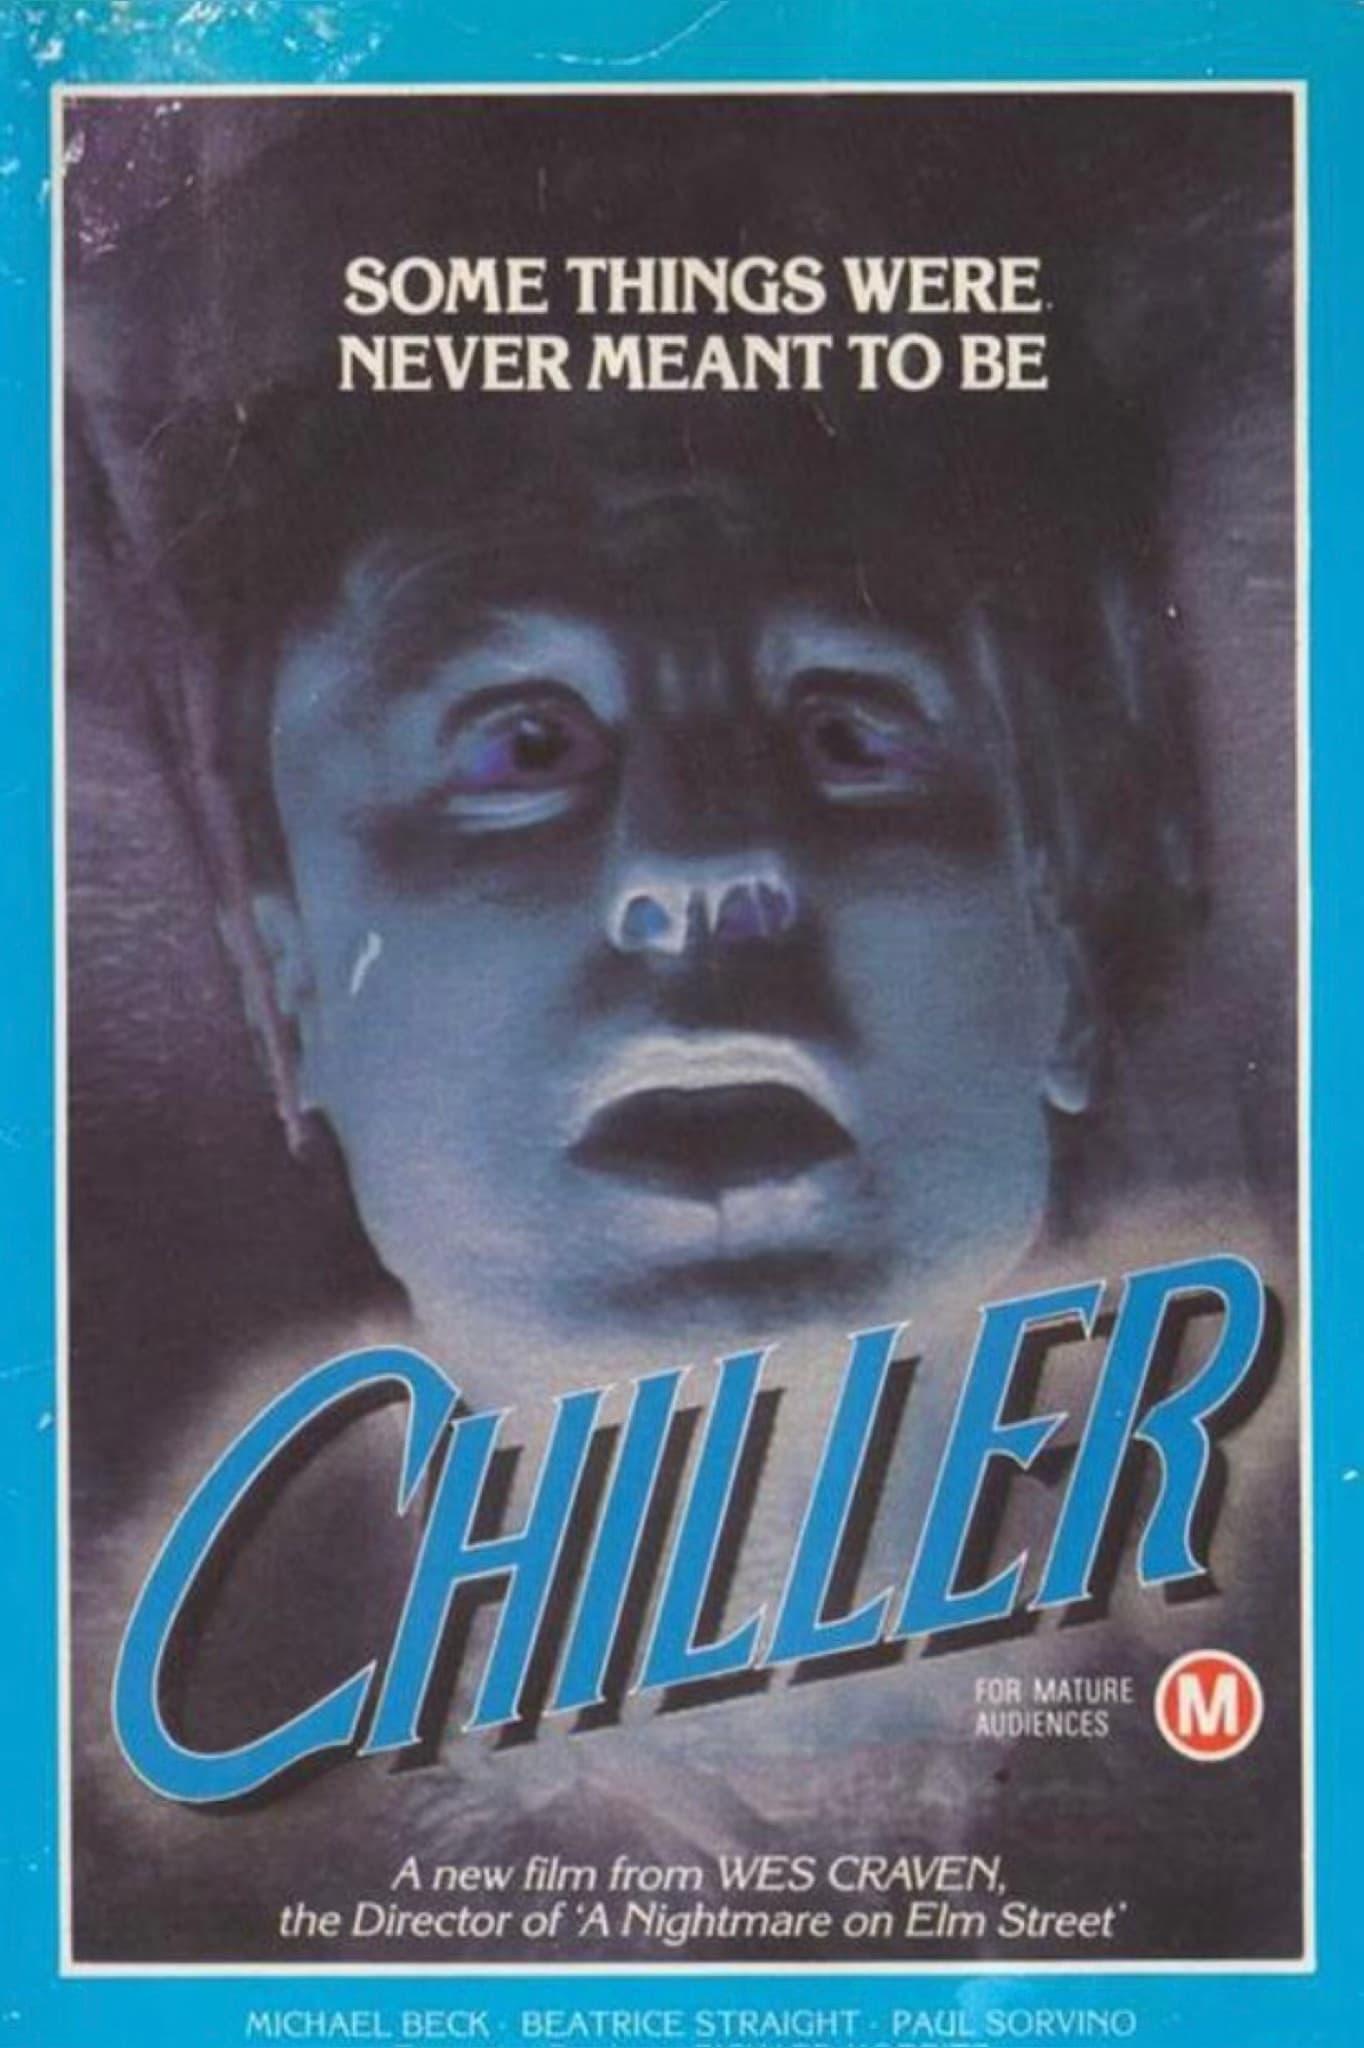 Chiller poster